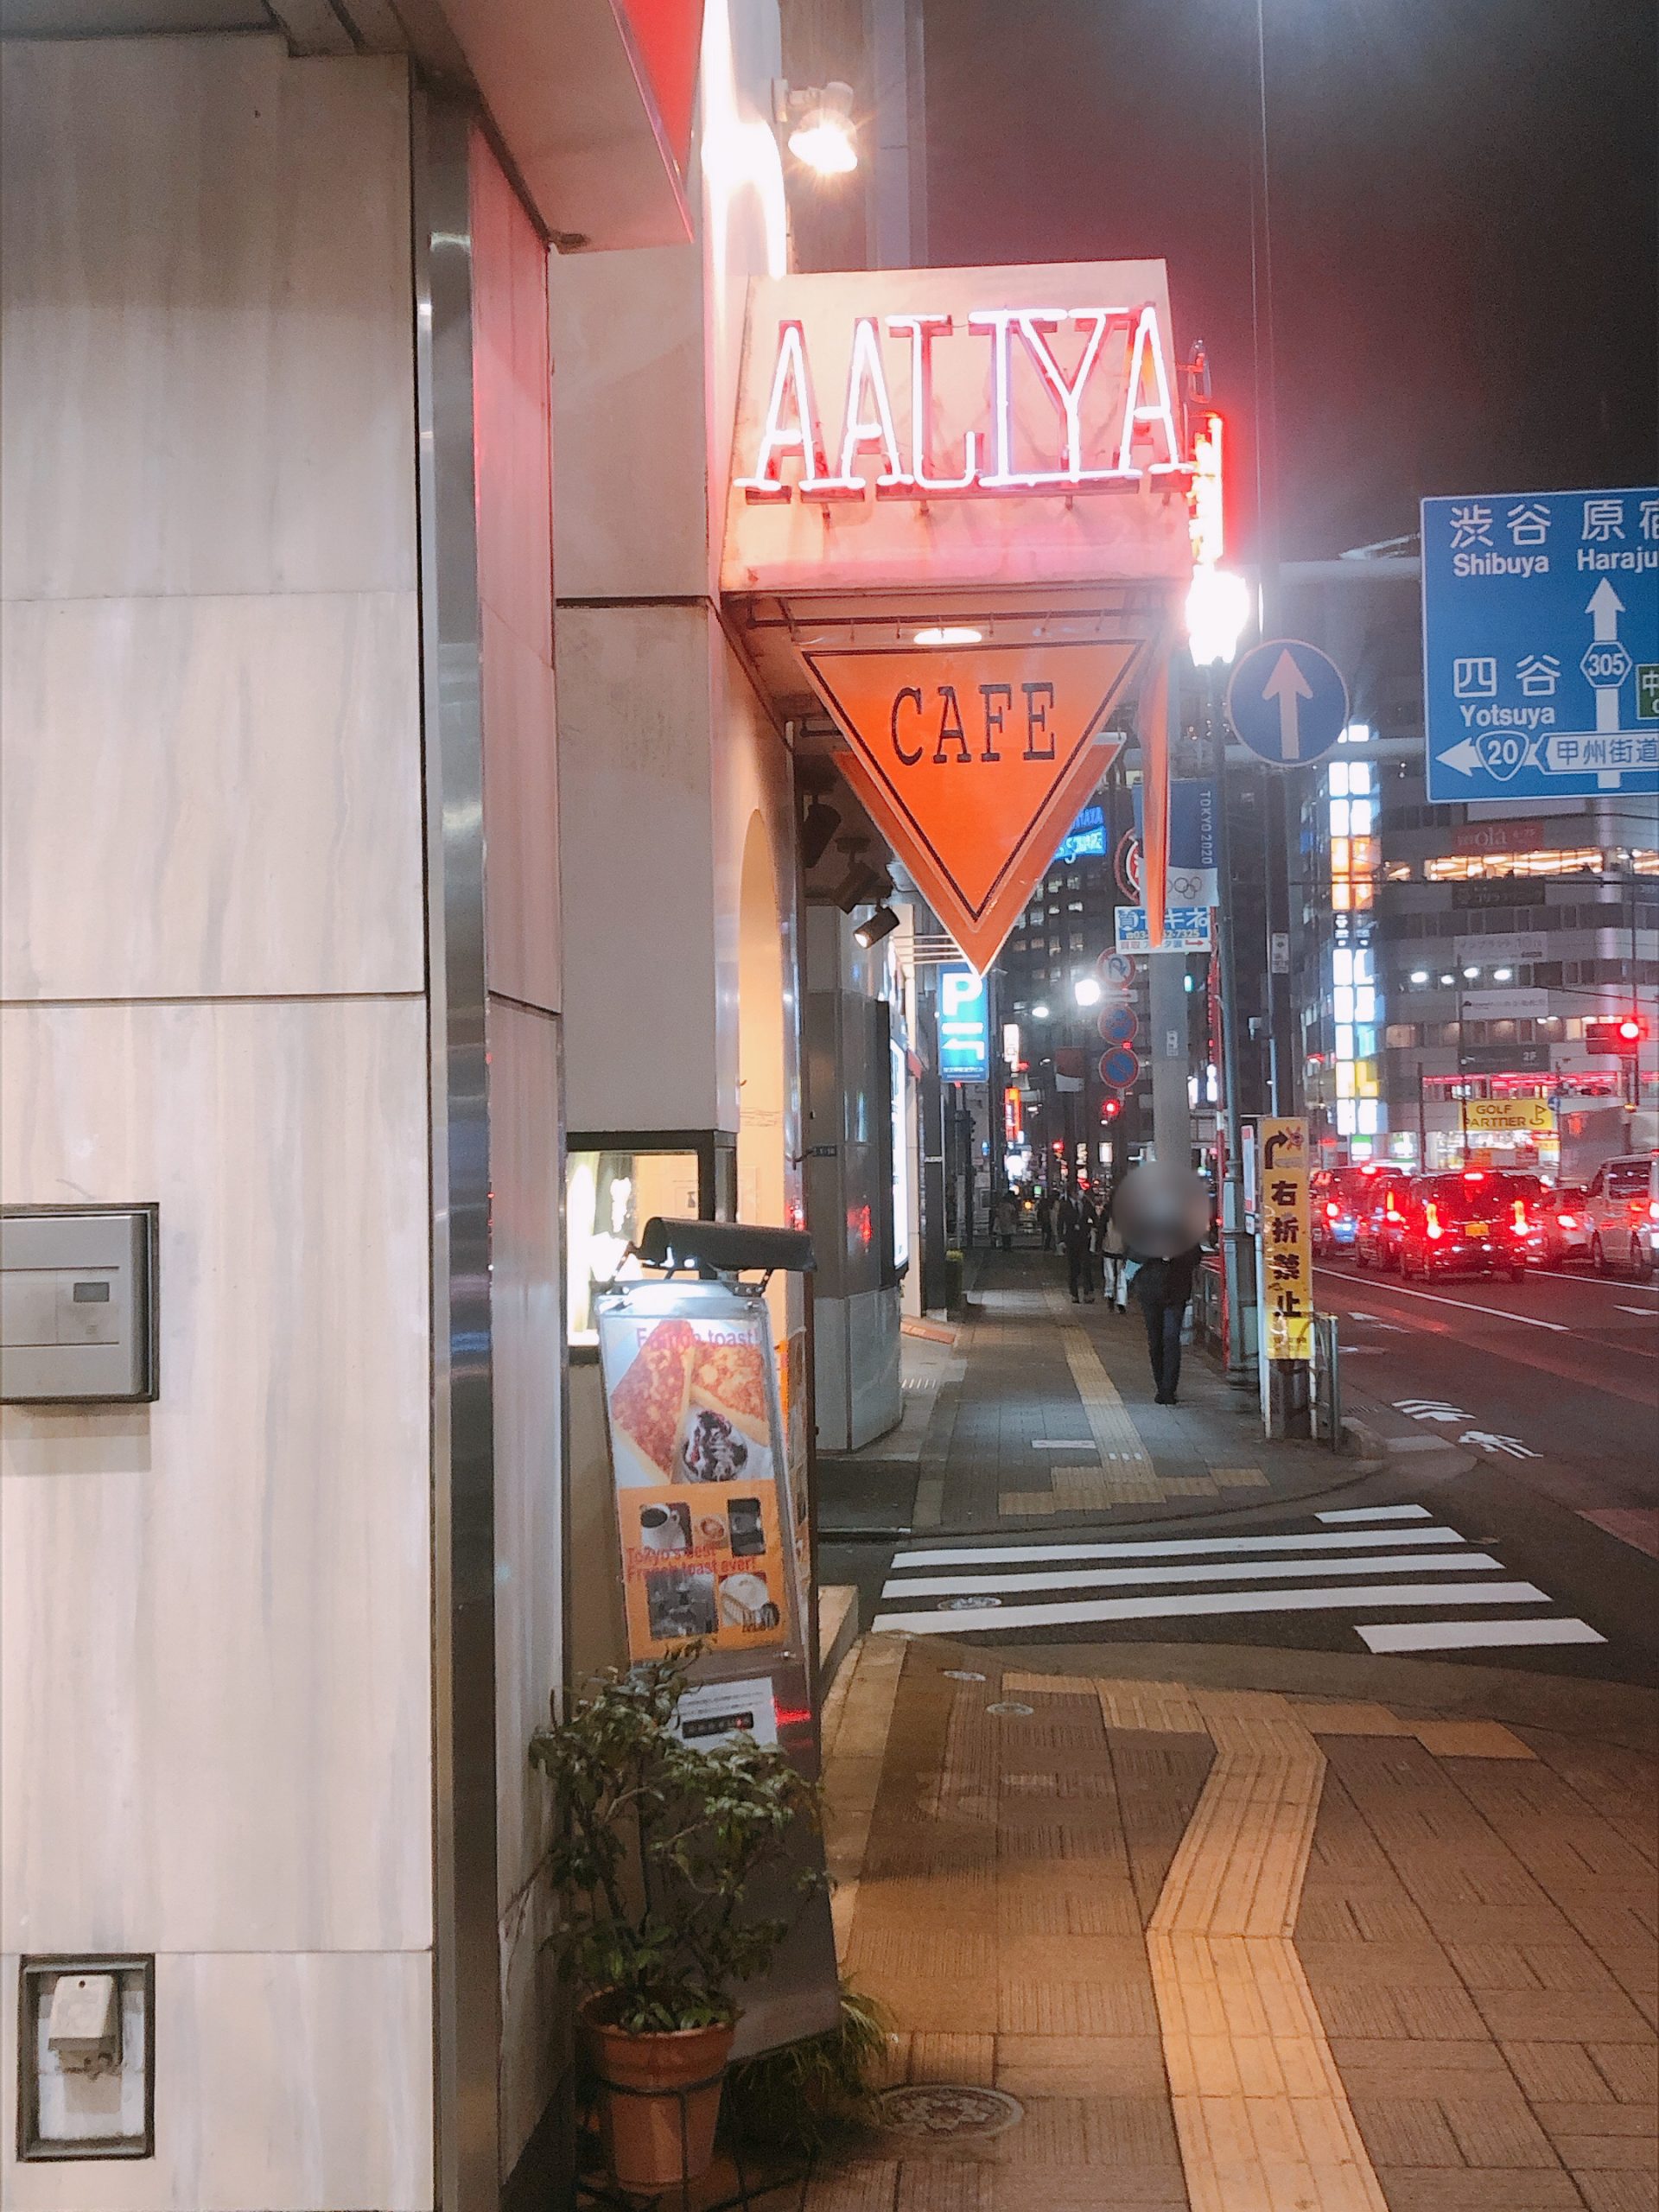 新宿三丁目 Cafe liya もっちもち フレンチトーストの名店 パンとケーキとコーヒーと